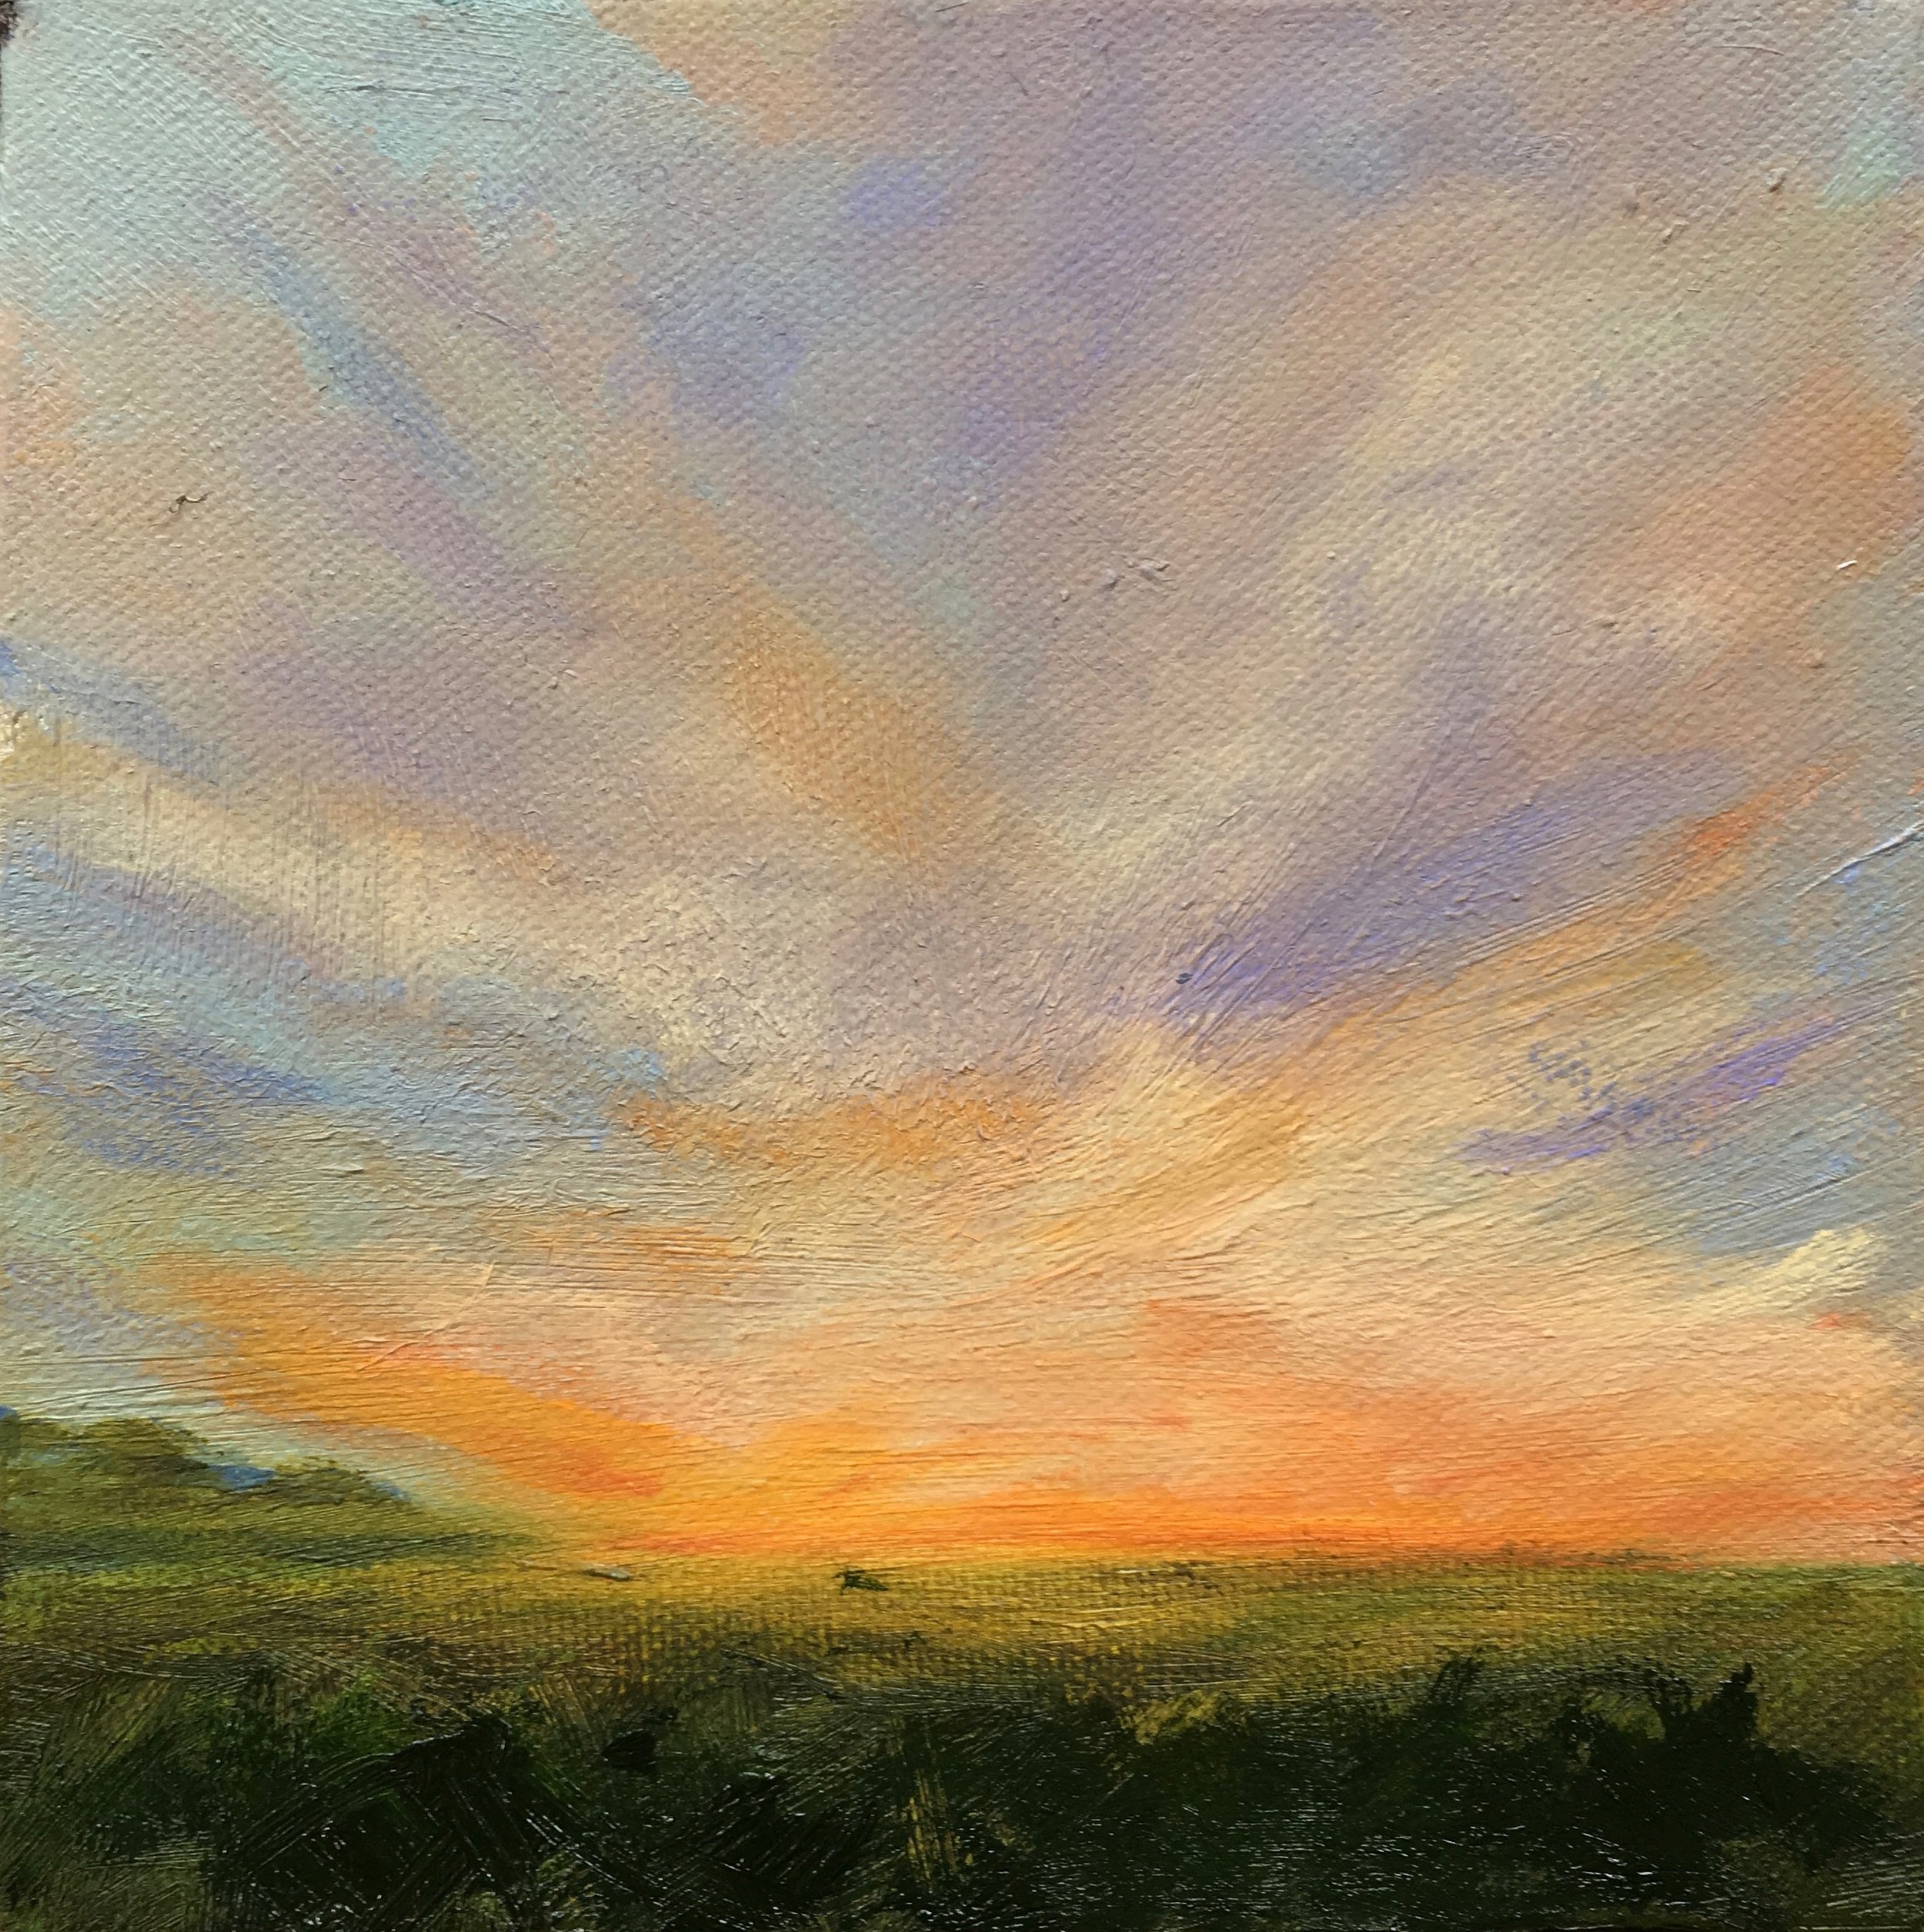   Setting Sun   Oil On Canvas  6x6 